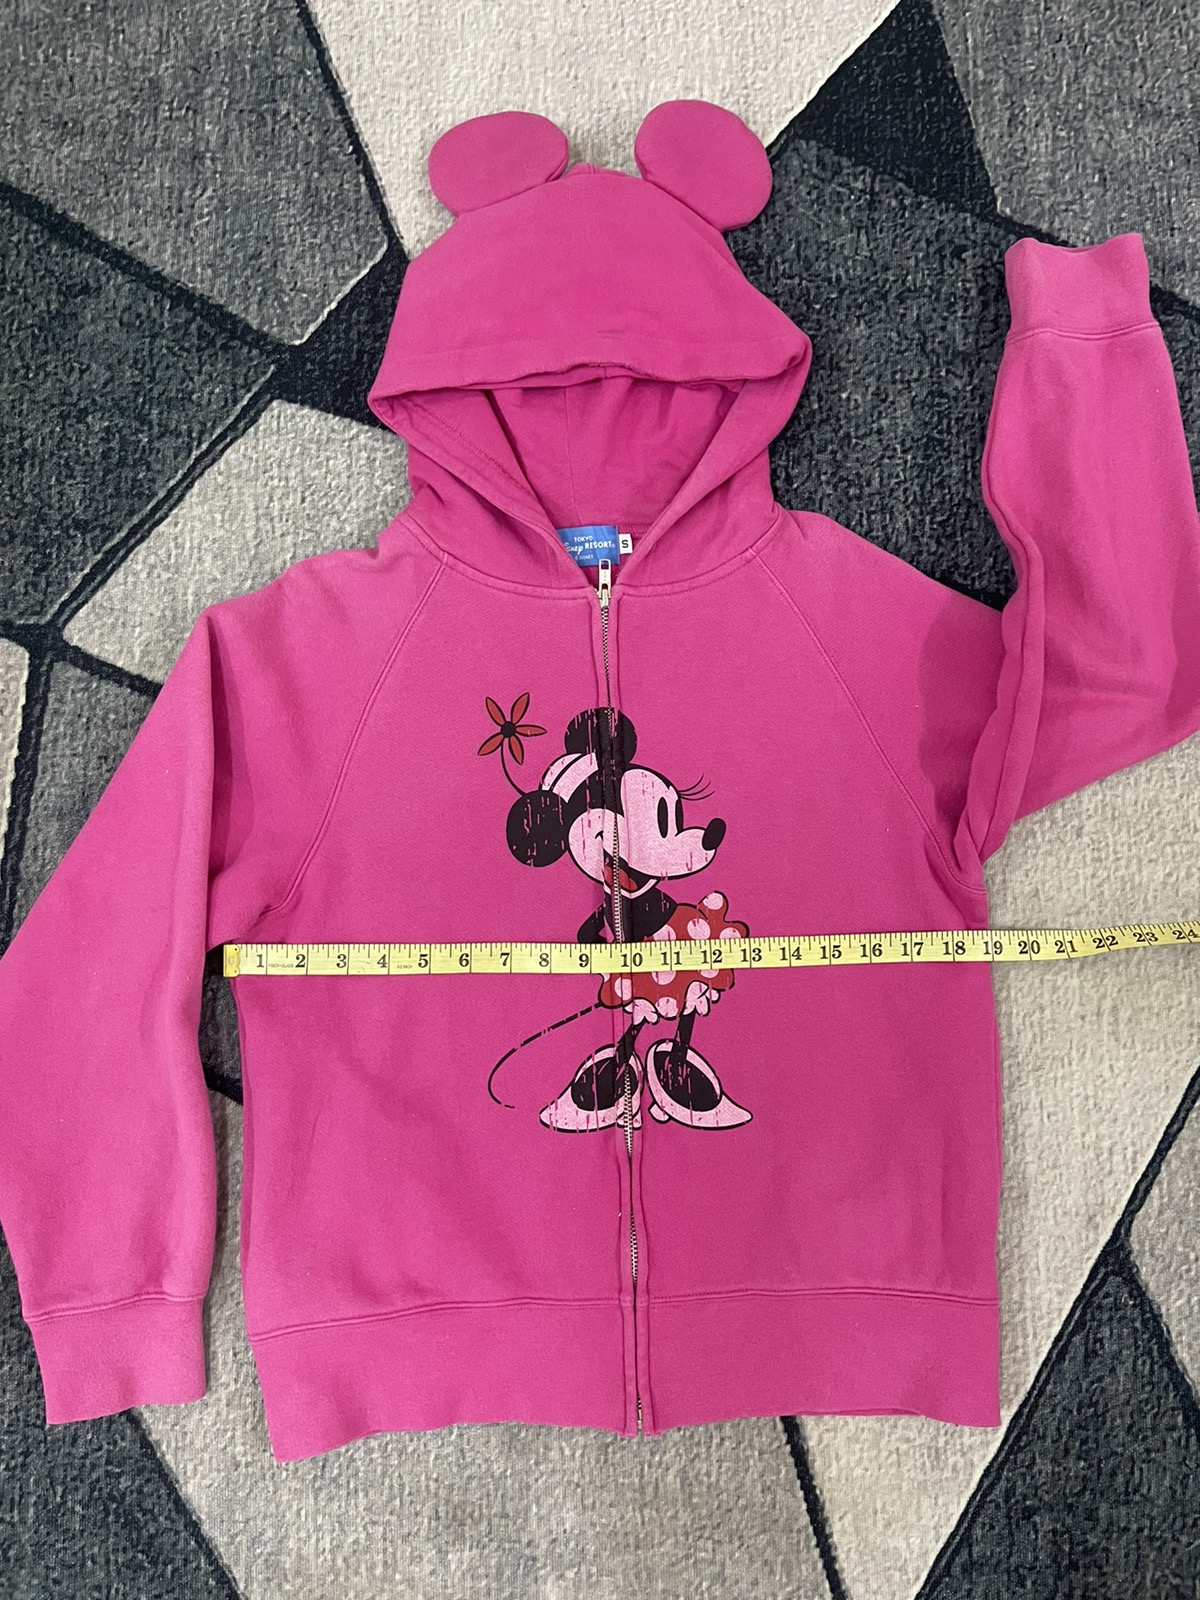 Mickey Mouse - Minnie / Disney Zip Up Hoodie Japan Designer / Vintage - 5